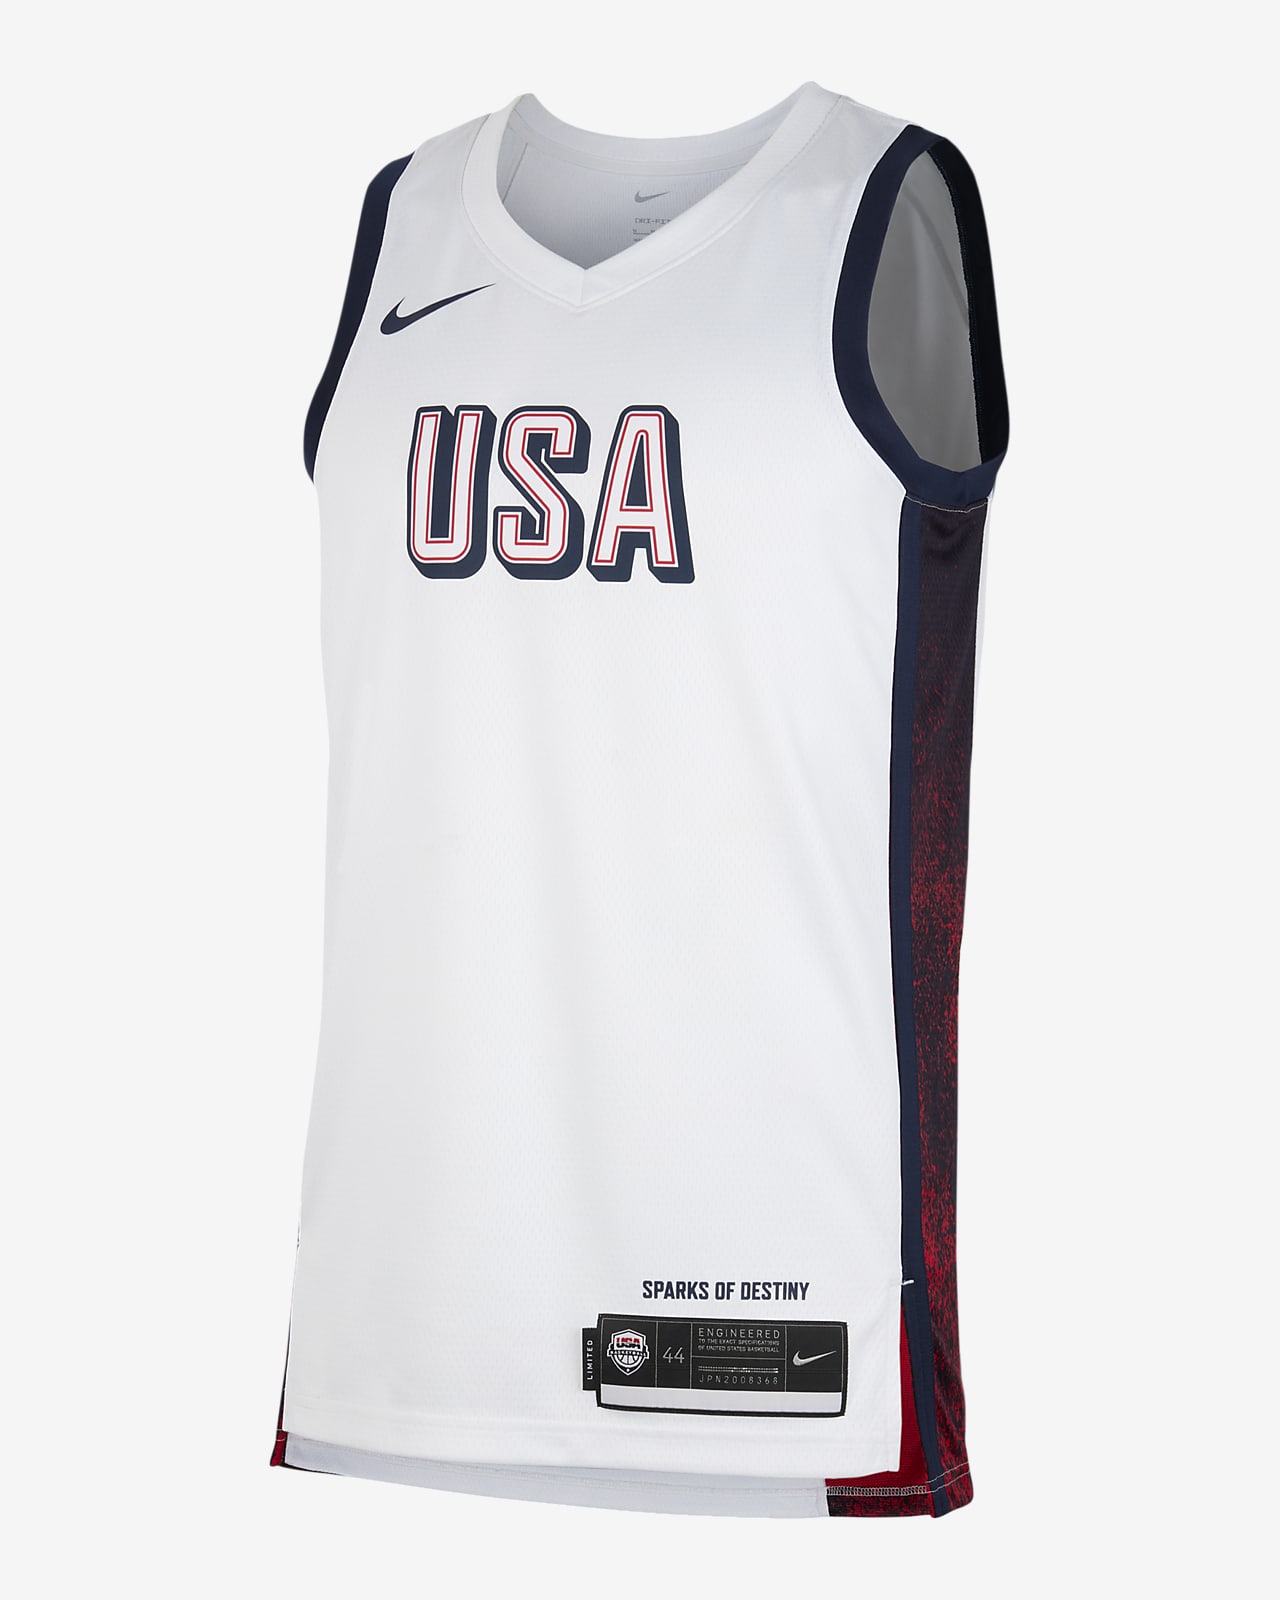 Pánský basketbalový dres USAB Limited, domácí